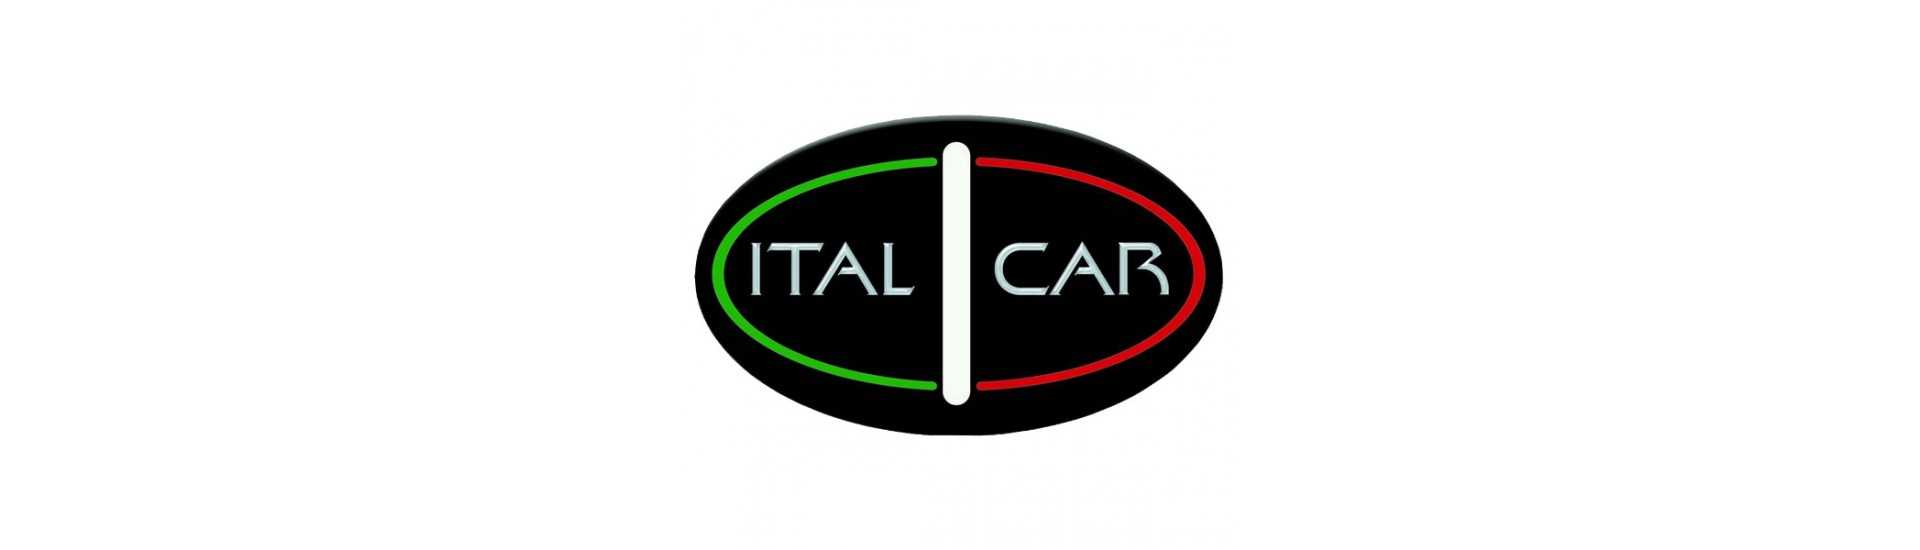 Rücken Feuer zum besten Preis für Auto ohne Lizenz Italcar